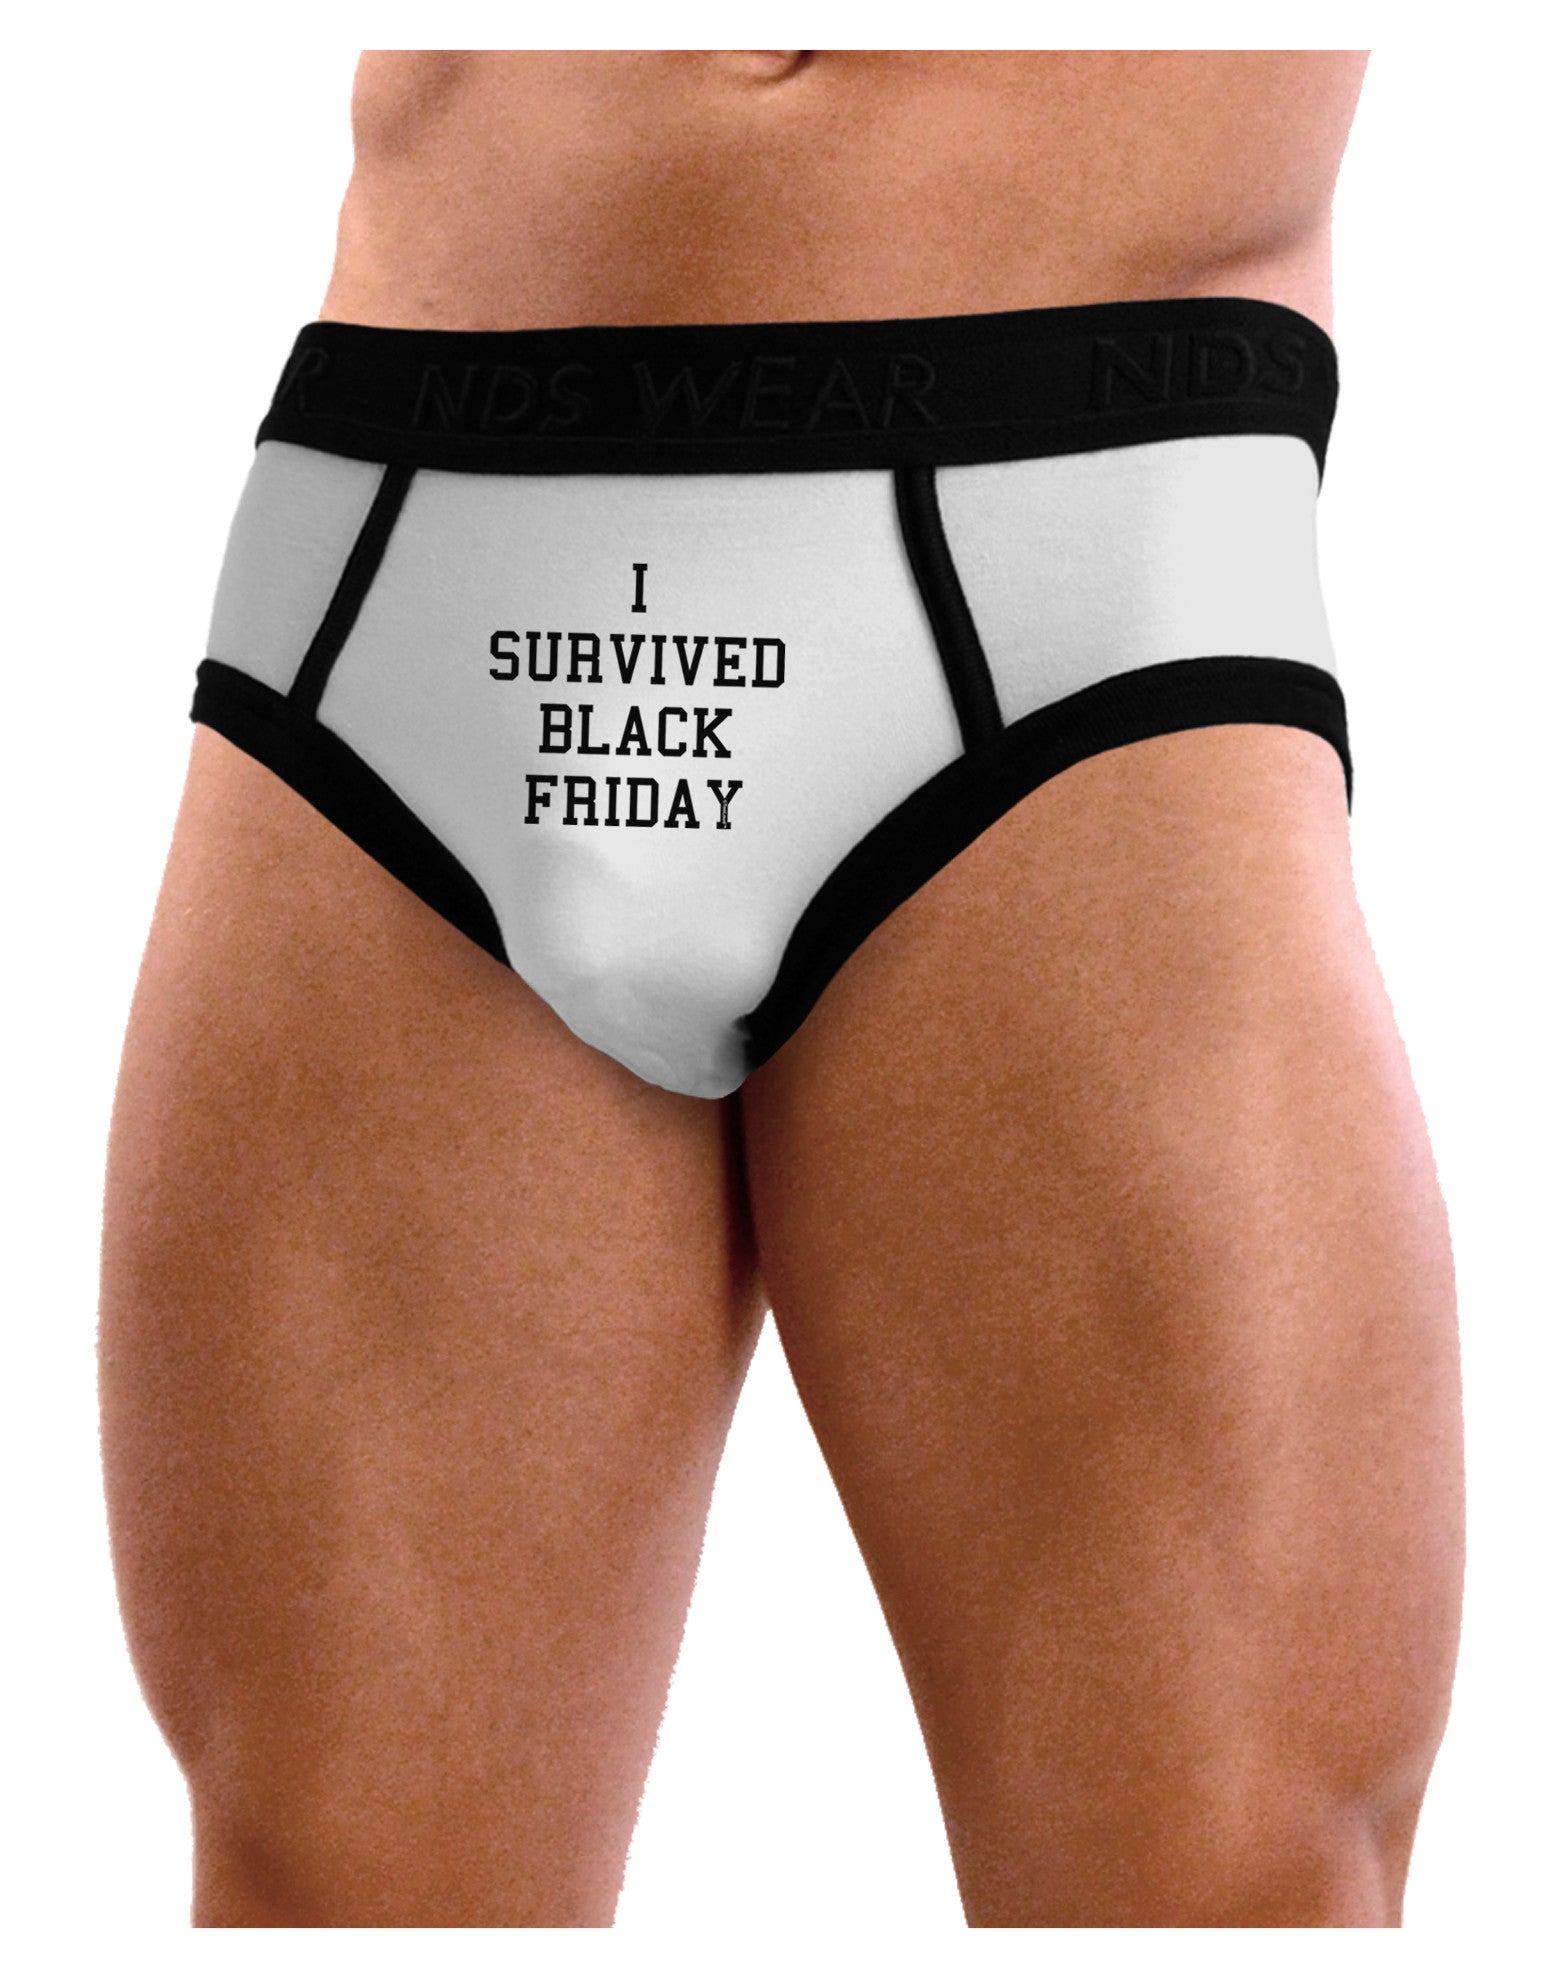 I Survived Black Friday Mens NDS Wear Briefs Underwear